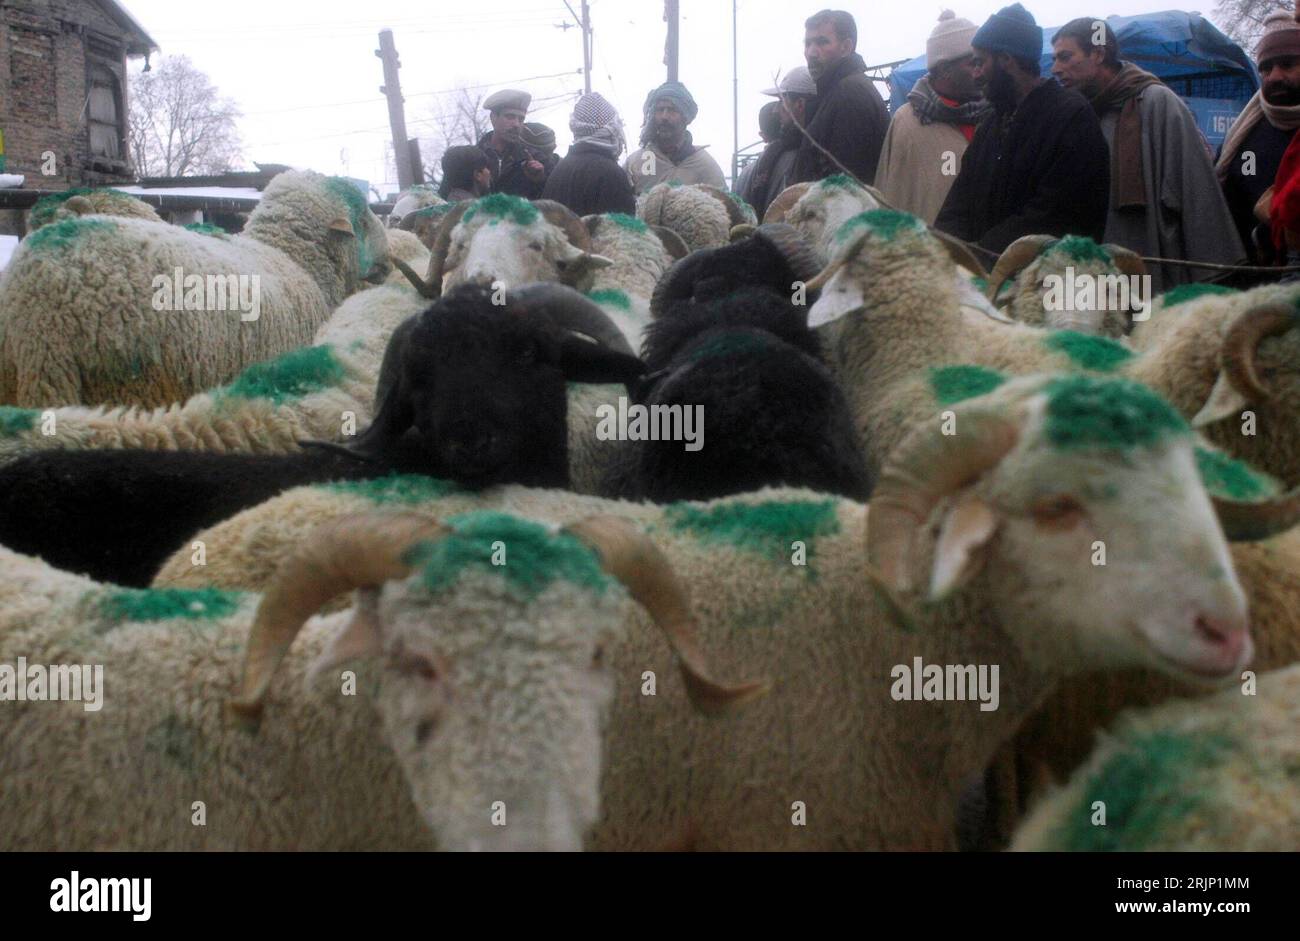 Bildnummer: 51050873  Datum: 07.01.2006  Copyright: imago/Xinhua Mit Farbe markierte Schafherde drängt sich auf dem Markt in Srinagar -  - Kashmir - PUBLICATIONxNOTxINxCHN, Tiere , Personen; 2006, Kashmir, Kaschmir, Srinagar, Schaf, Schafe, Herde, Herden, Schafherde, Schafherden, Nutztiere, Säugetiere, markiert, markiertes, Eid; , quer, Kbdig, Totale, Landwirtschaft, Wirtschaft, Indien / Nutztier Stock Photo